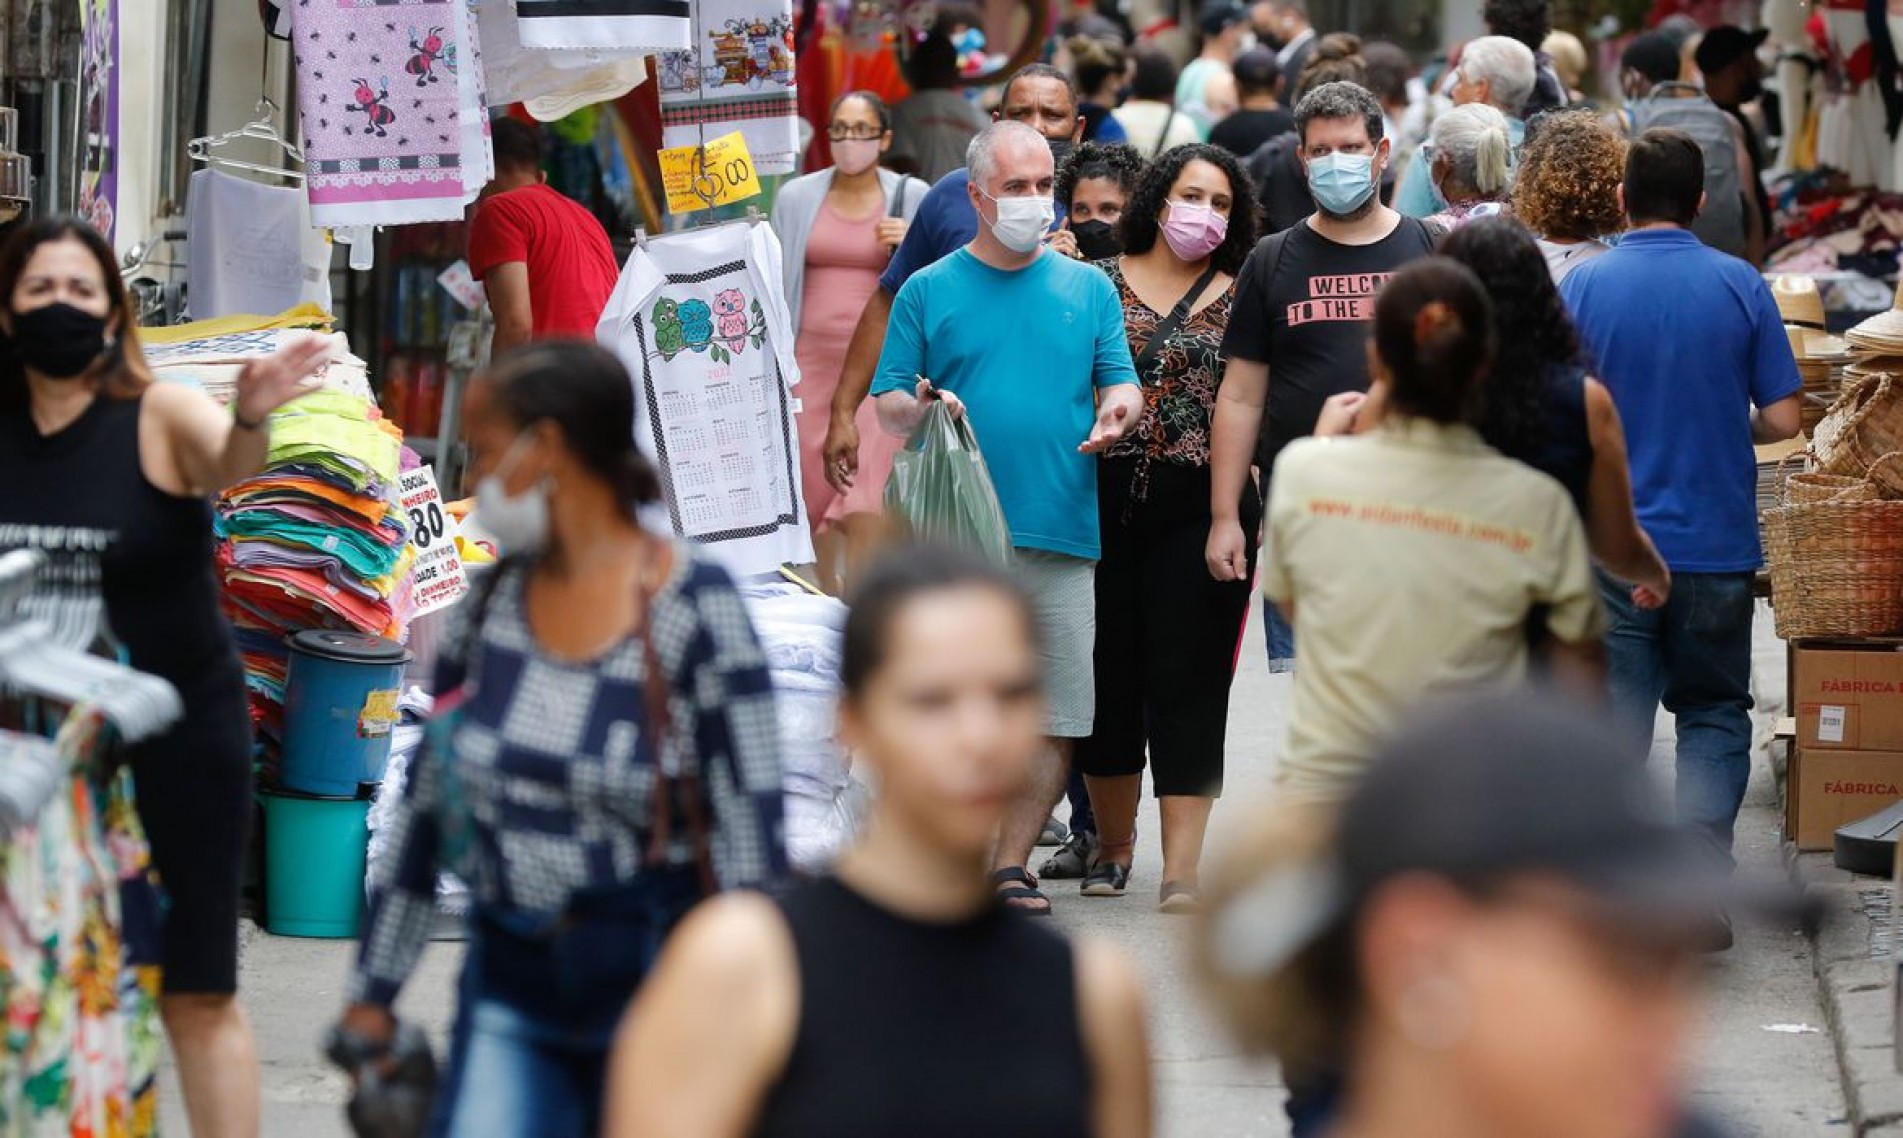  Movimentação de pessoas no centro da cidade do Rio de Janeiro